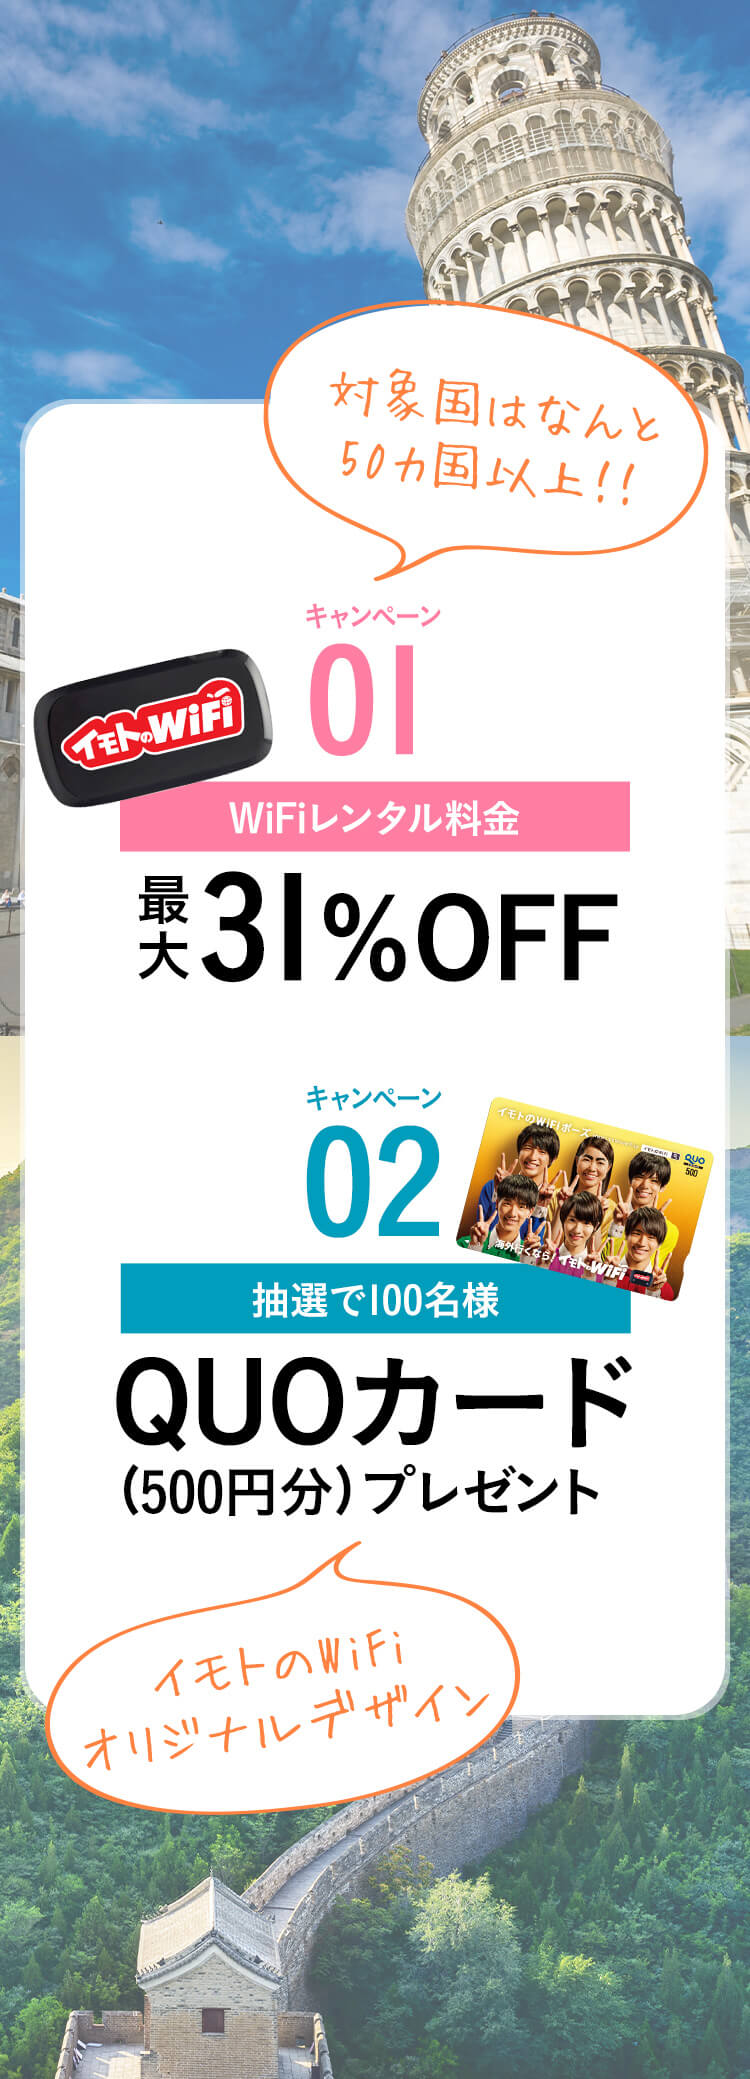 キャンペーン01:WiFiレンタル最大31%OFF キャンペーン02:抽選で100名様QUOカードプレゼント